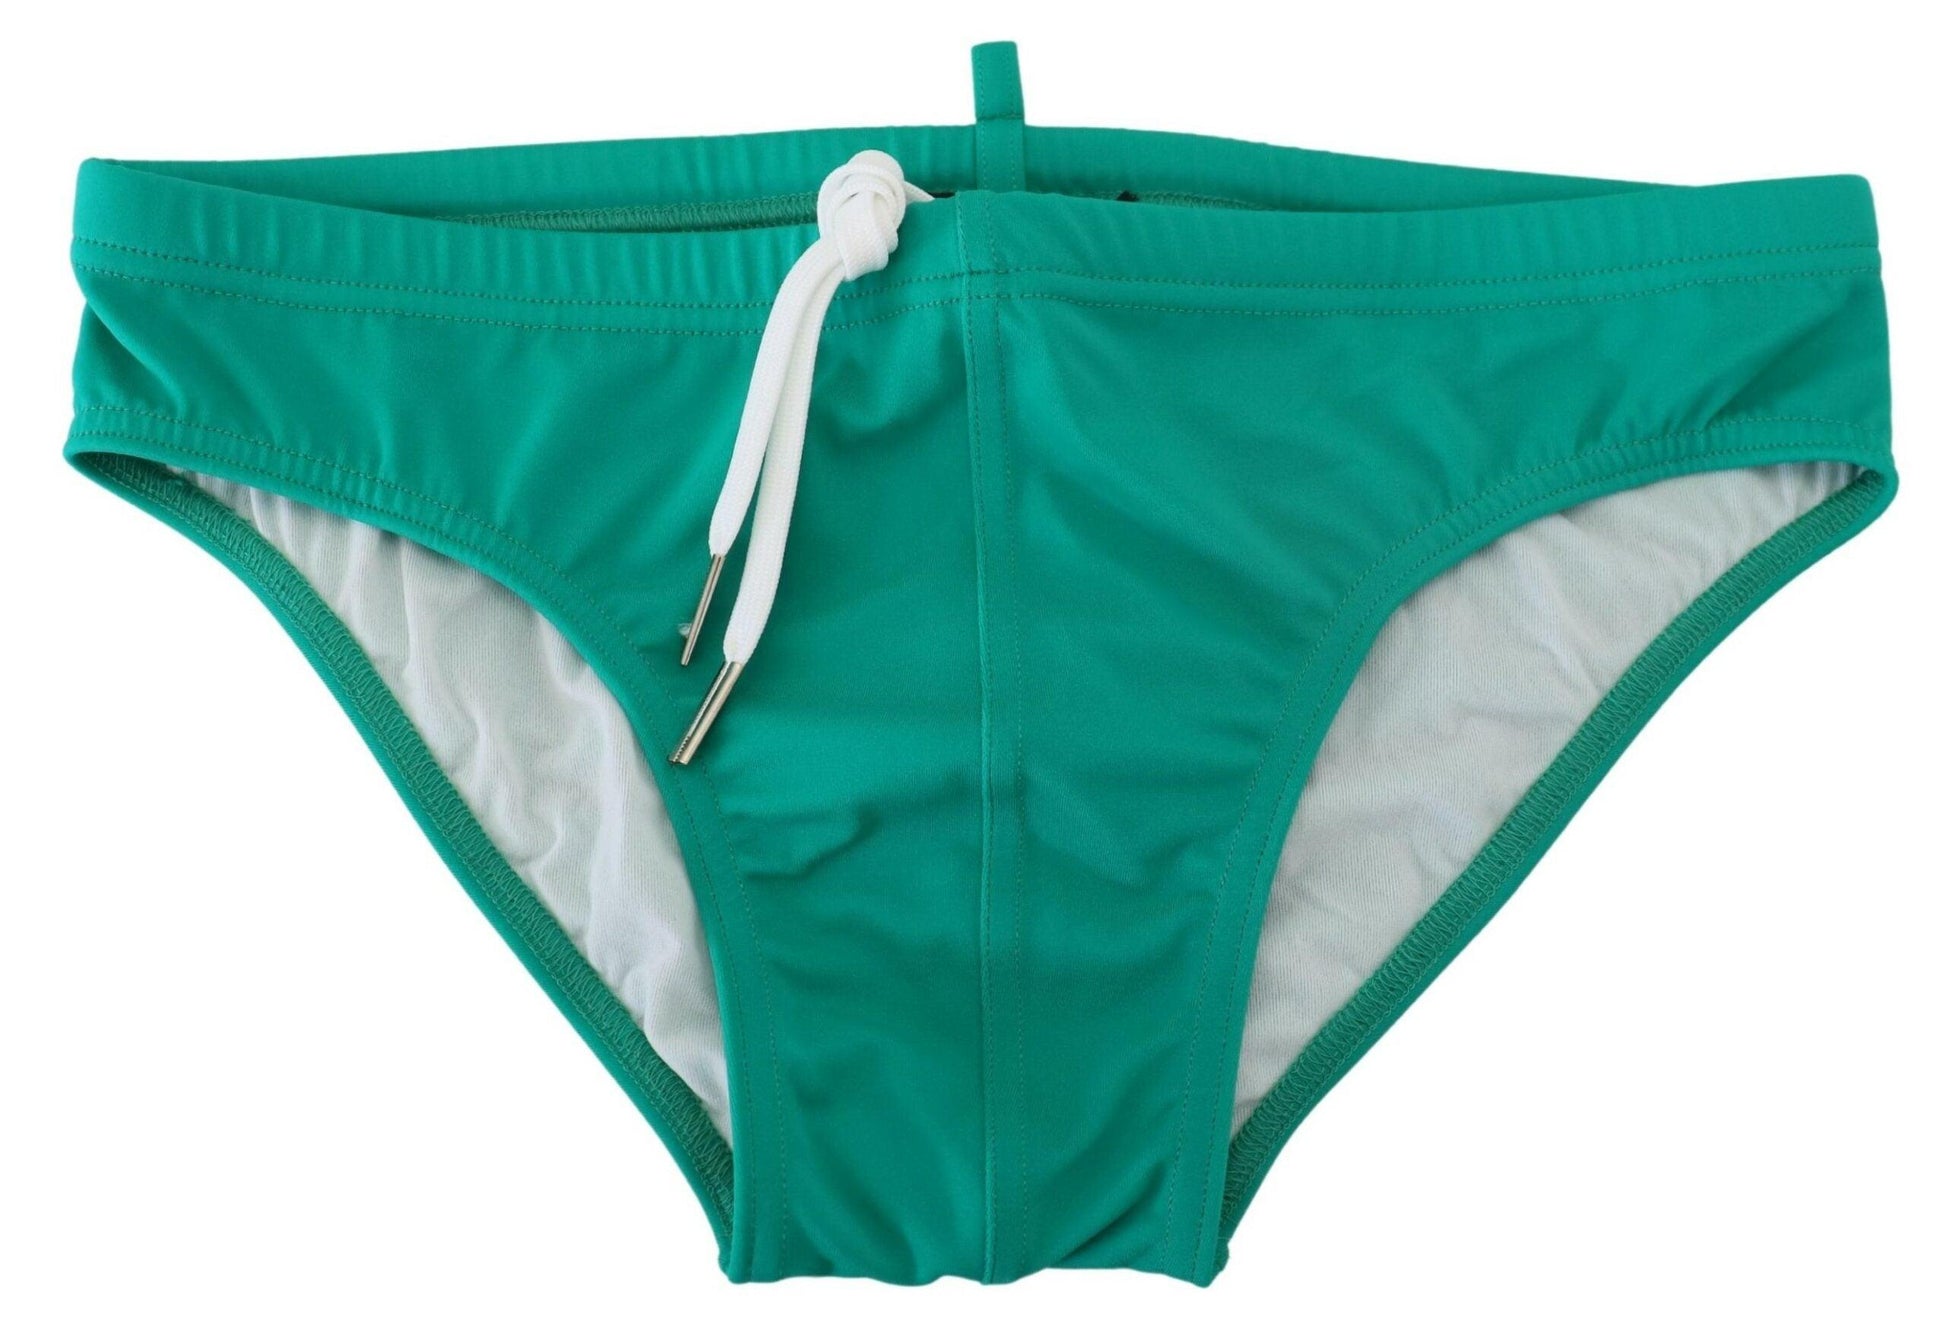 Dsquared² Chic Green Swim Briefs with White Logo - PER.FASHION